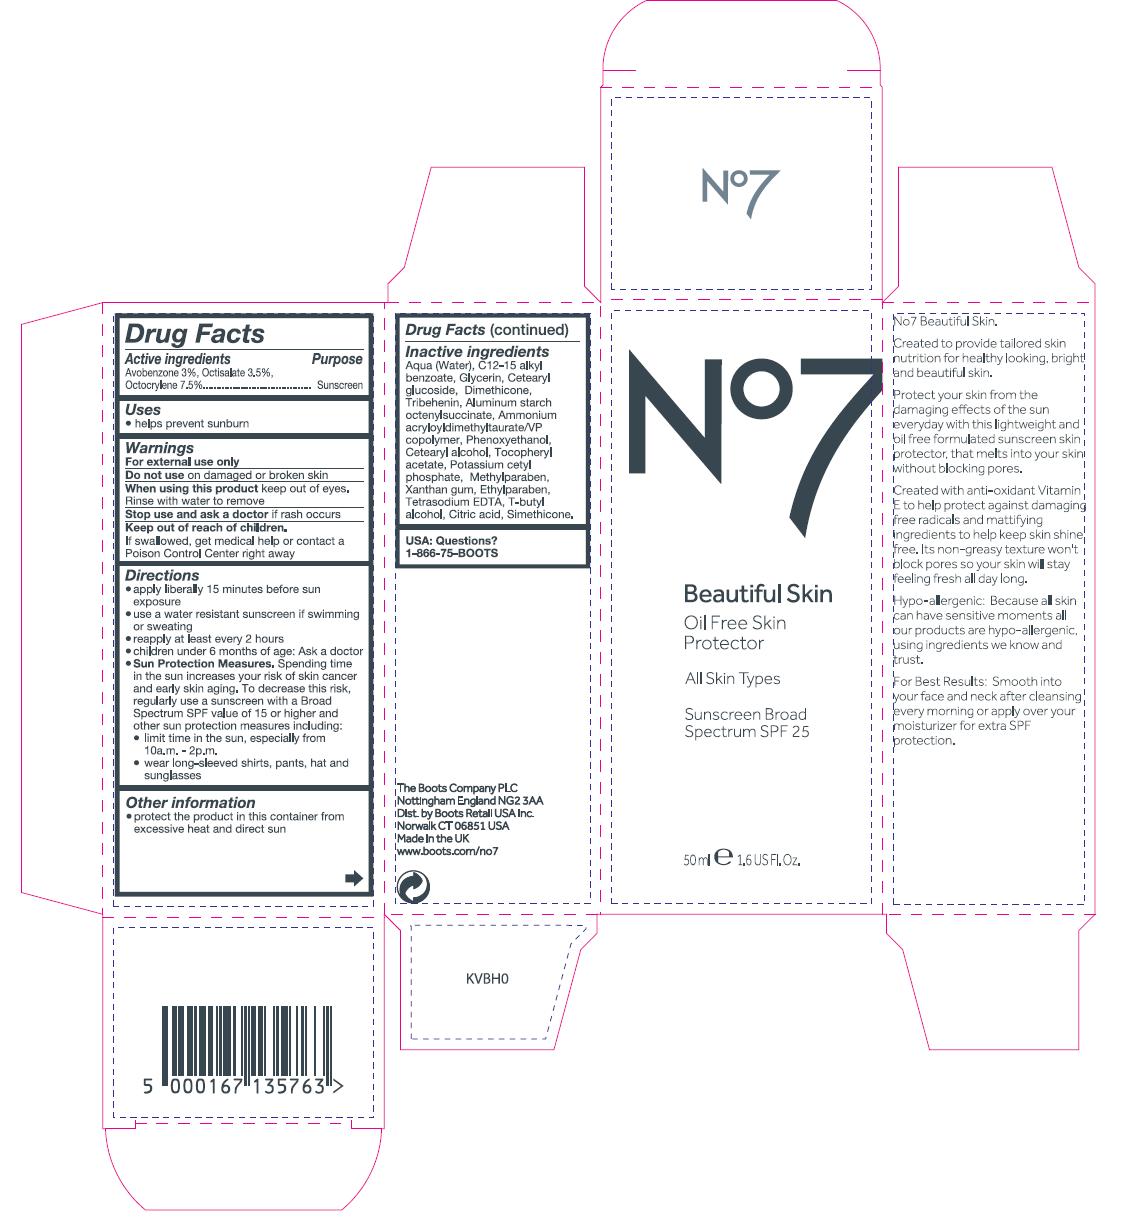 No7 BS Oil Free Skin Protector SPF 25 carton